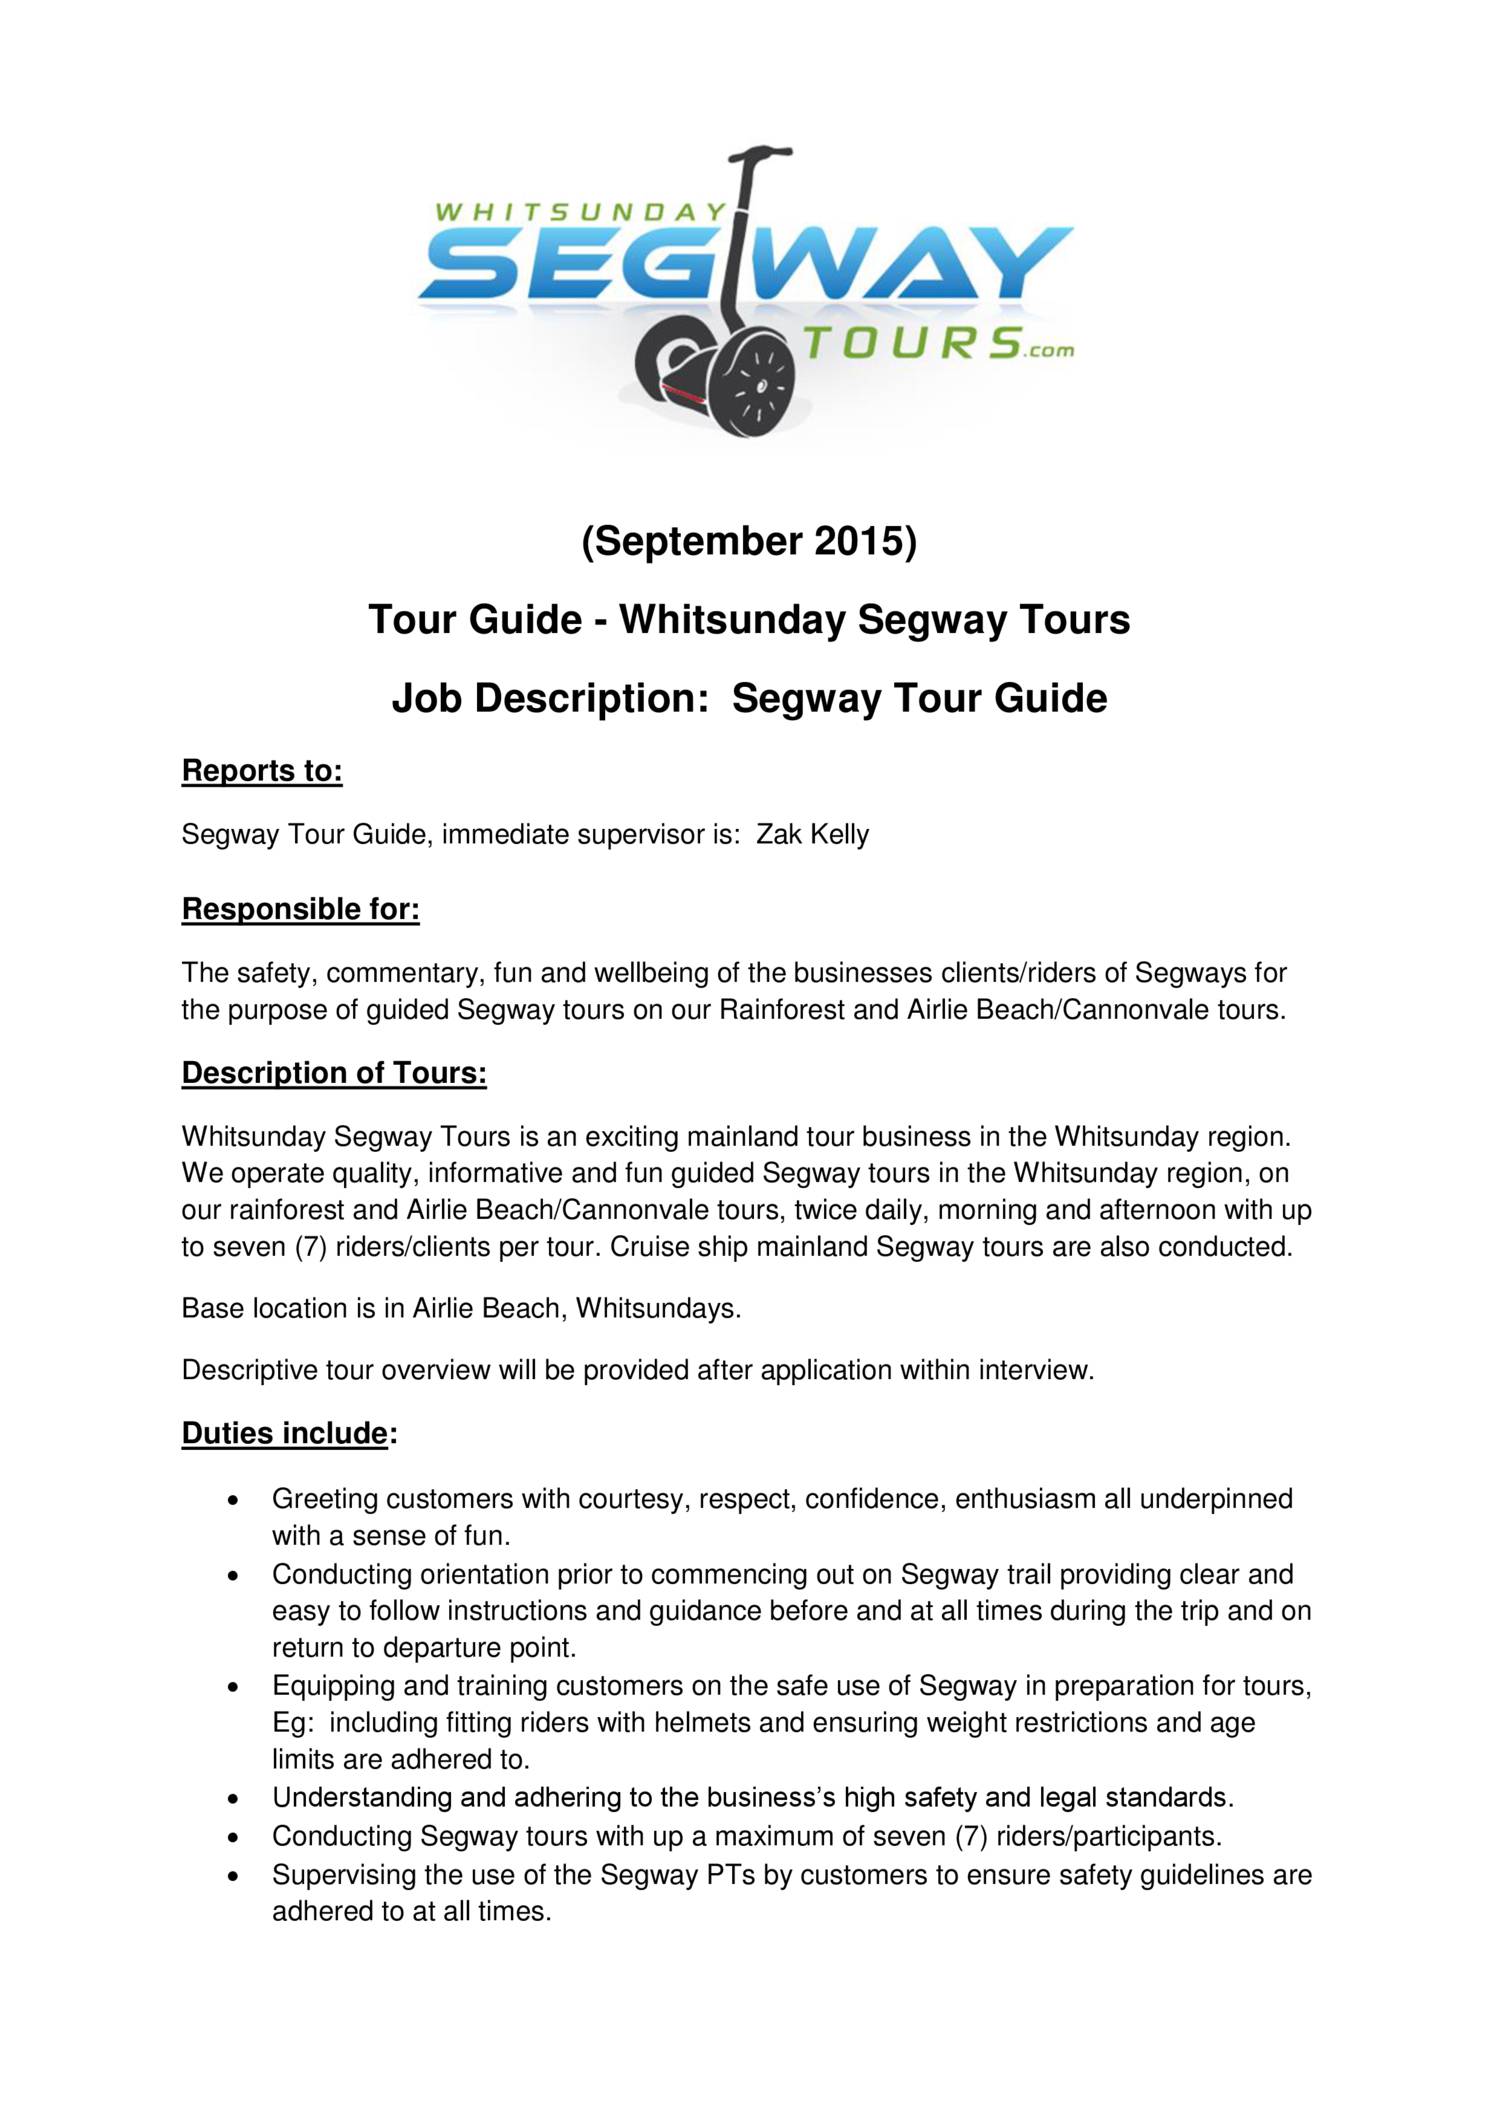 description of a tour guide job